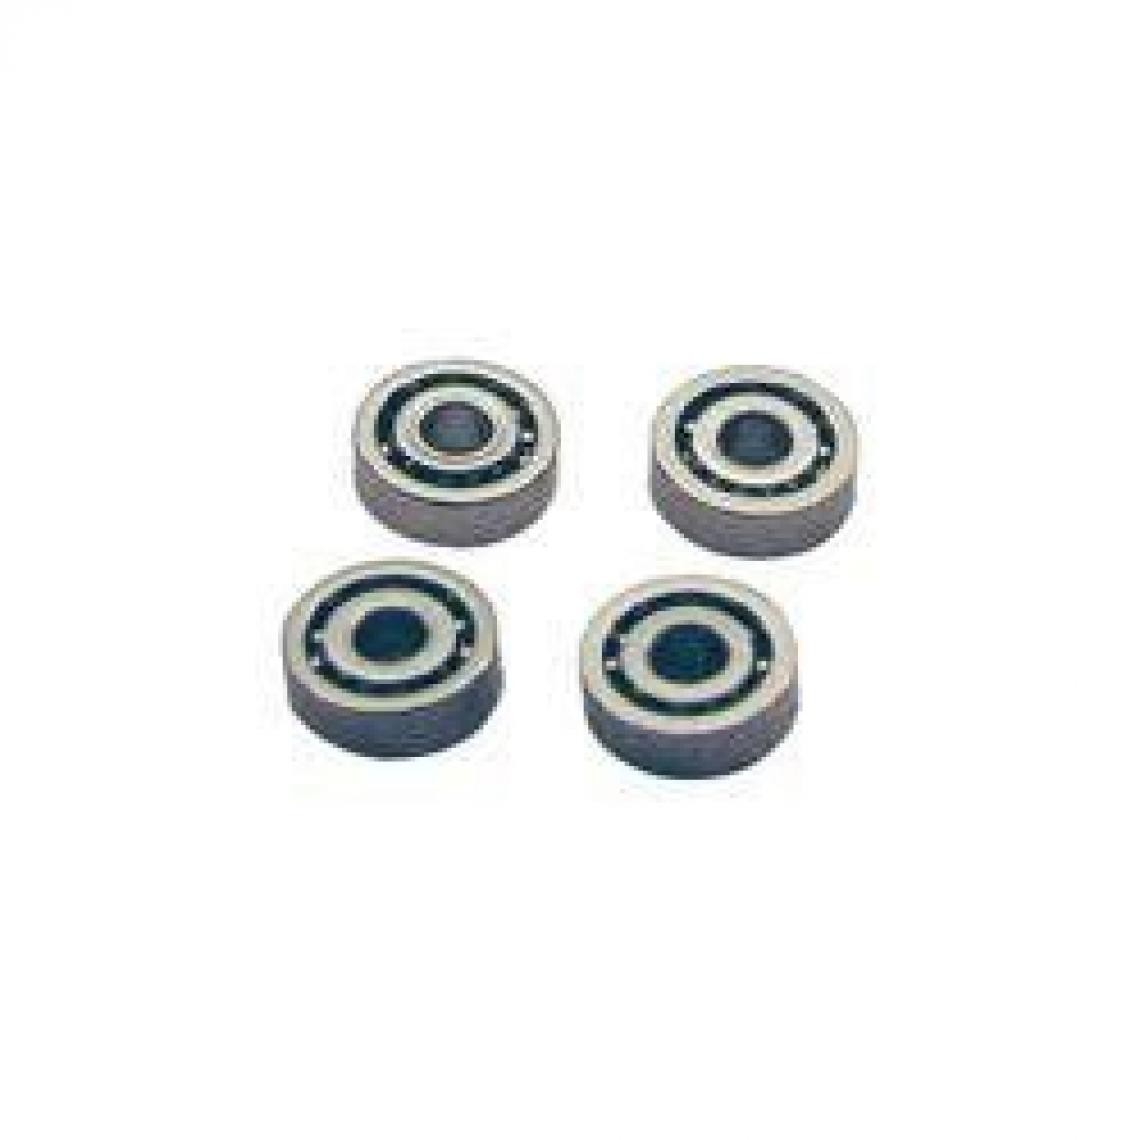 Inconnu - Micro-roulement à billes acier K2 fermé (Ø x h) 5 mm x 2.2 mm 4 pc(s) - Accessoires et pièces